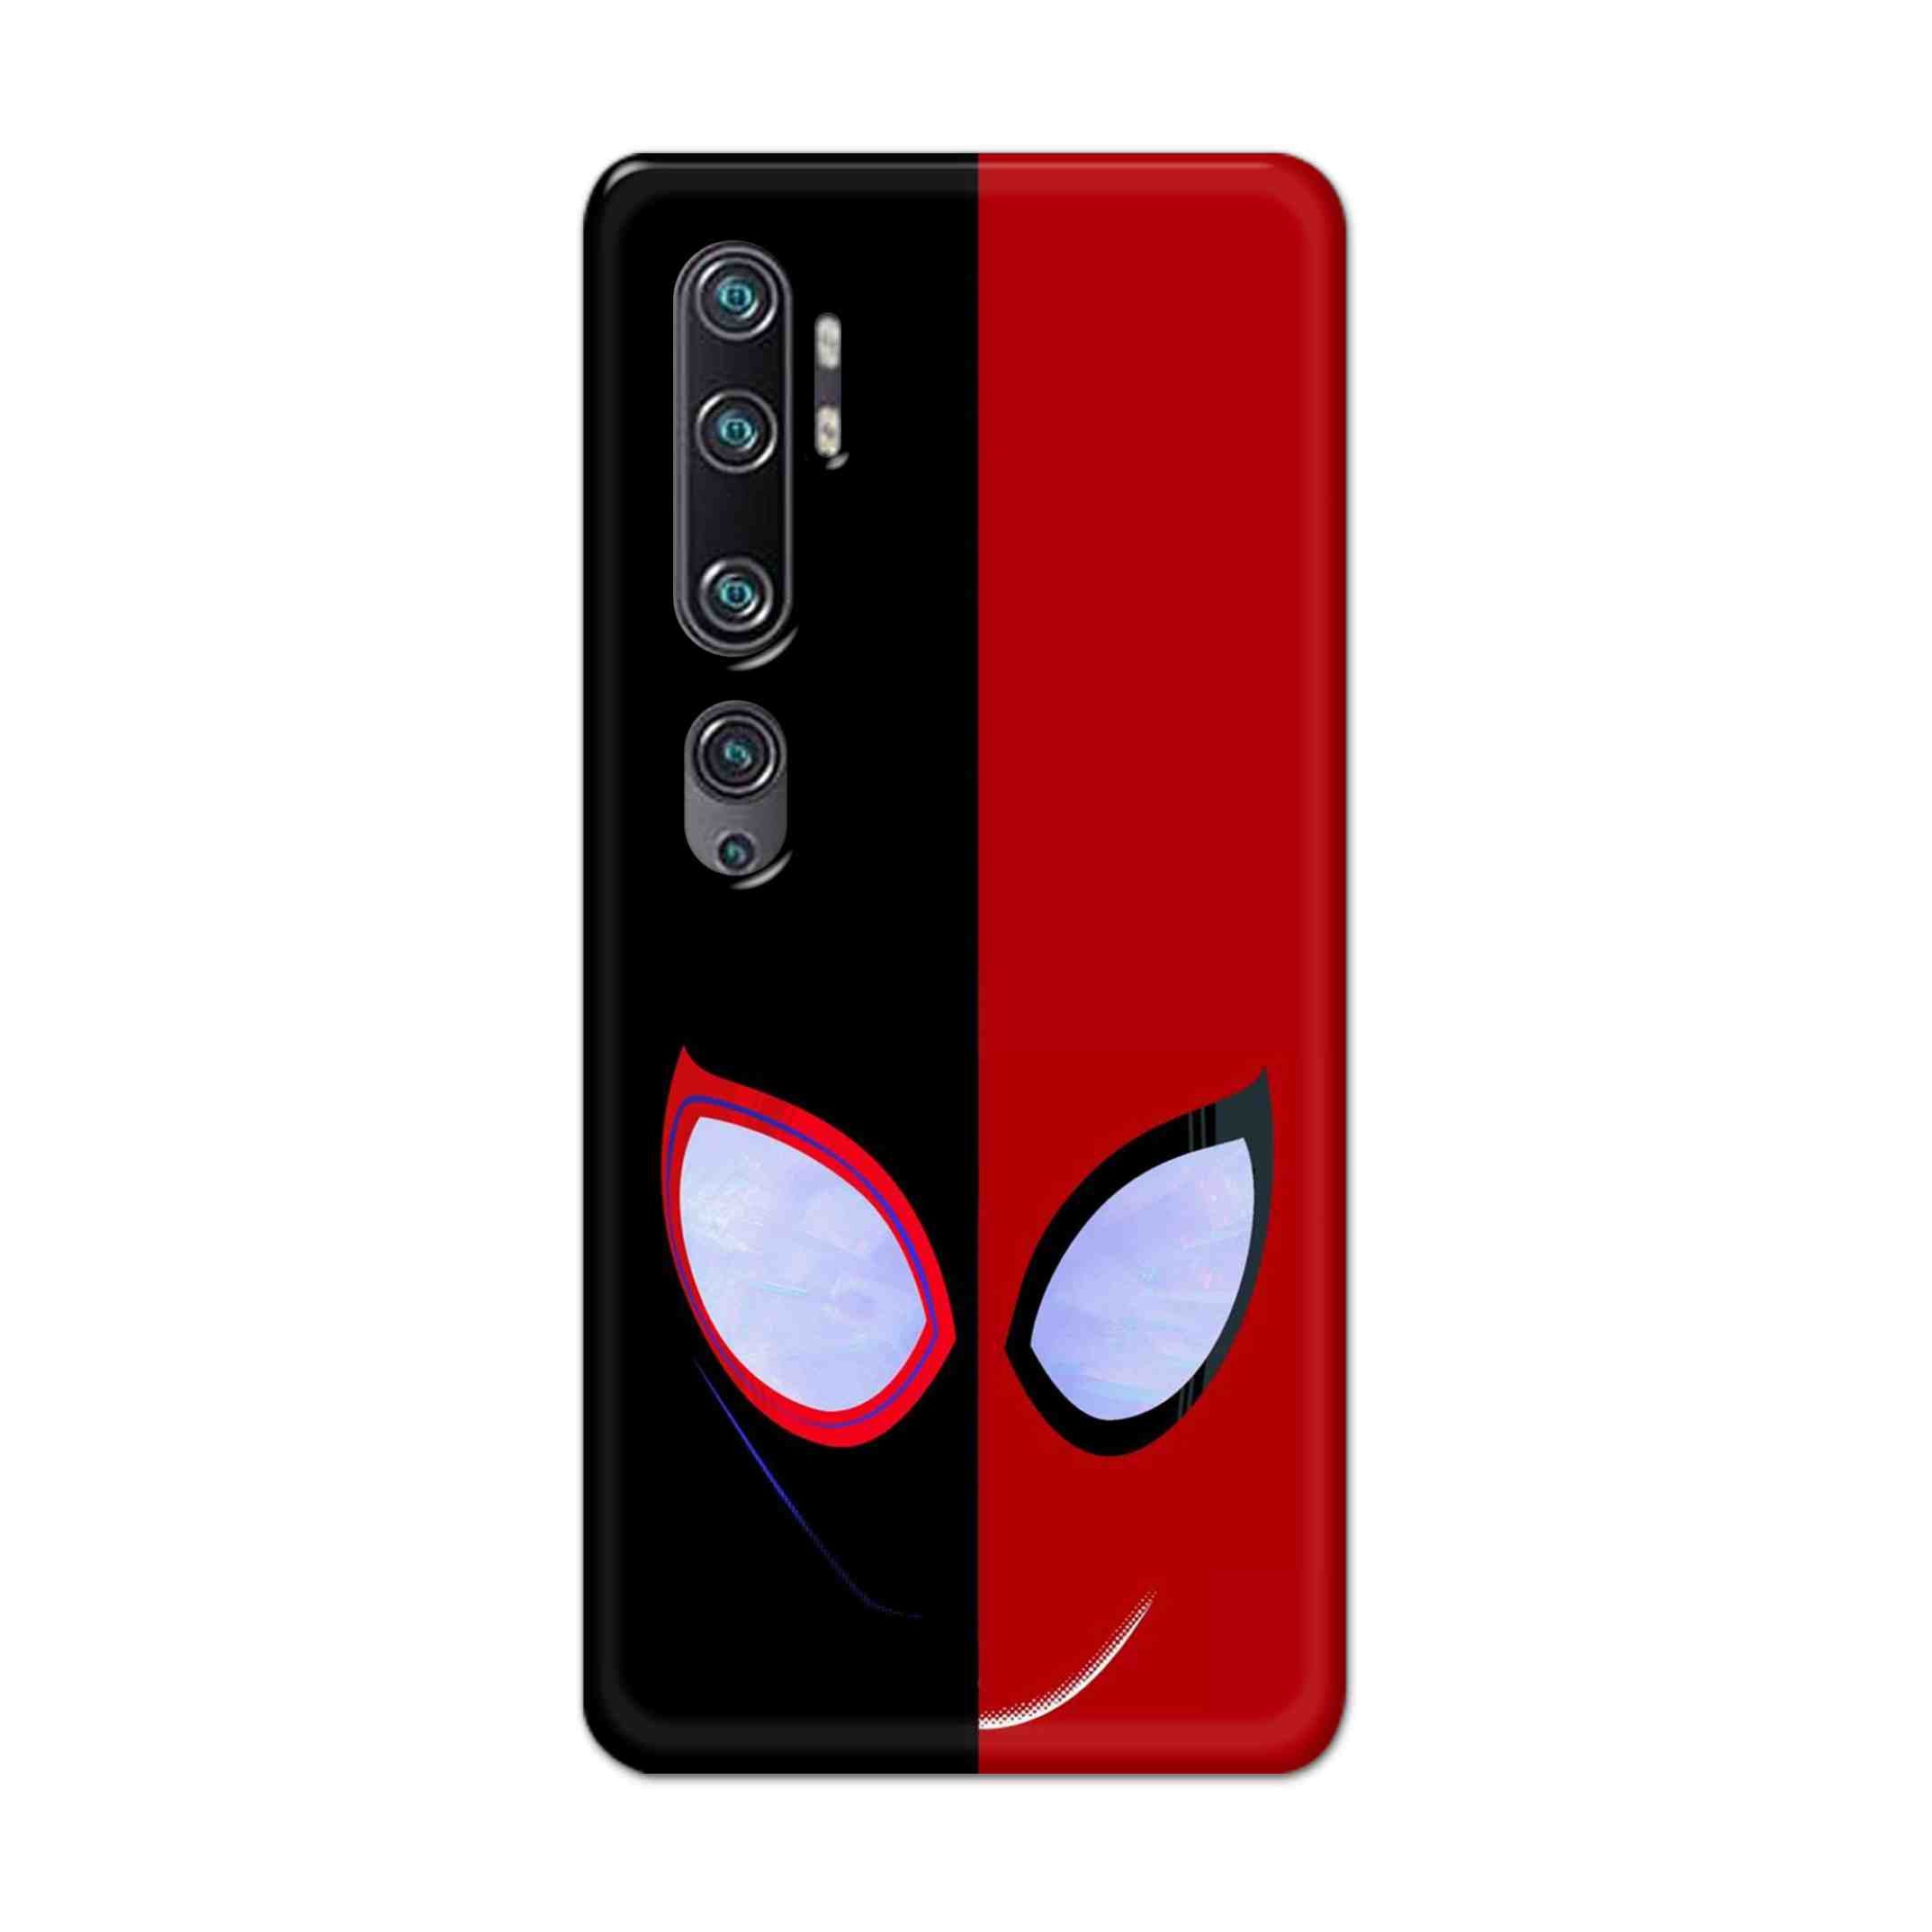 Buy Venom Vs Spiderman Hard Back Mobile Phone Case Cover For Xiaomi Mi Note 10 Online